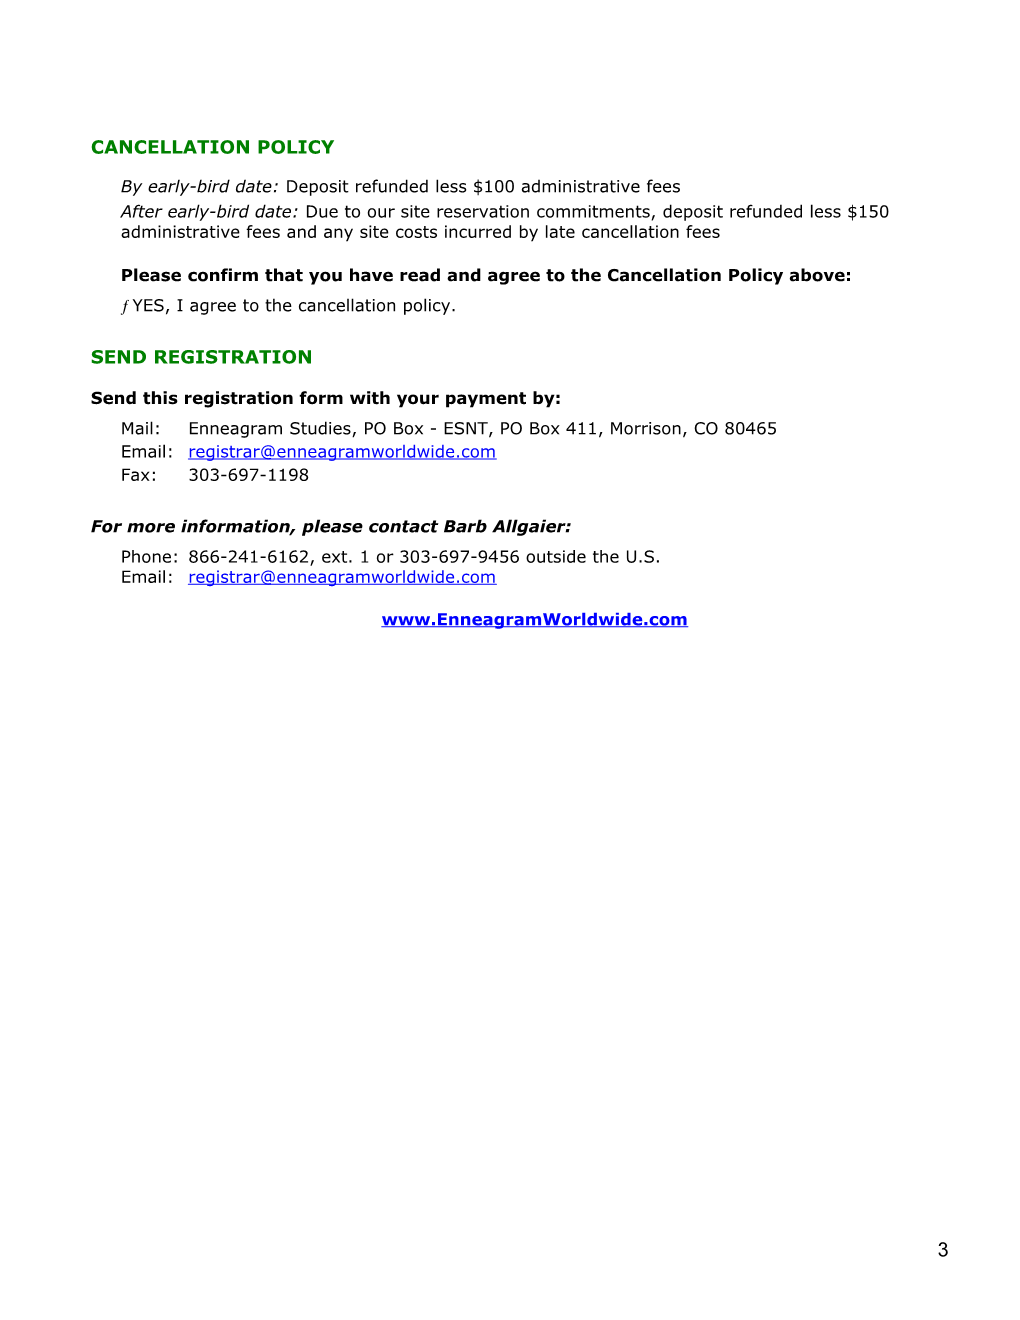 Eptp Registration Form for July 2010